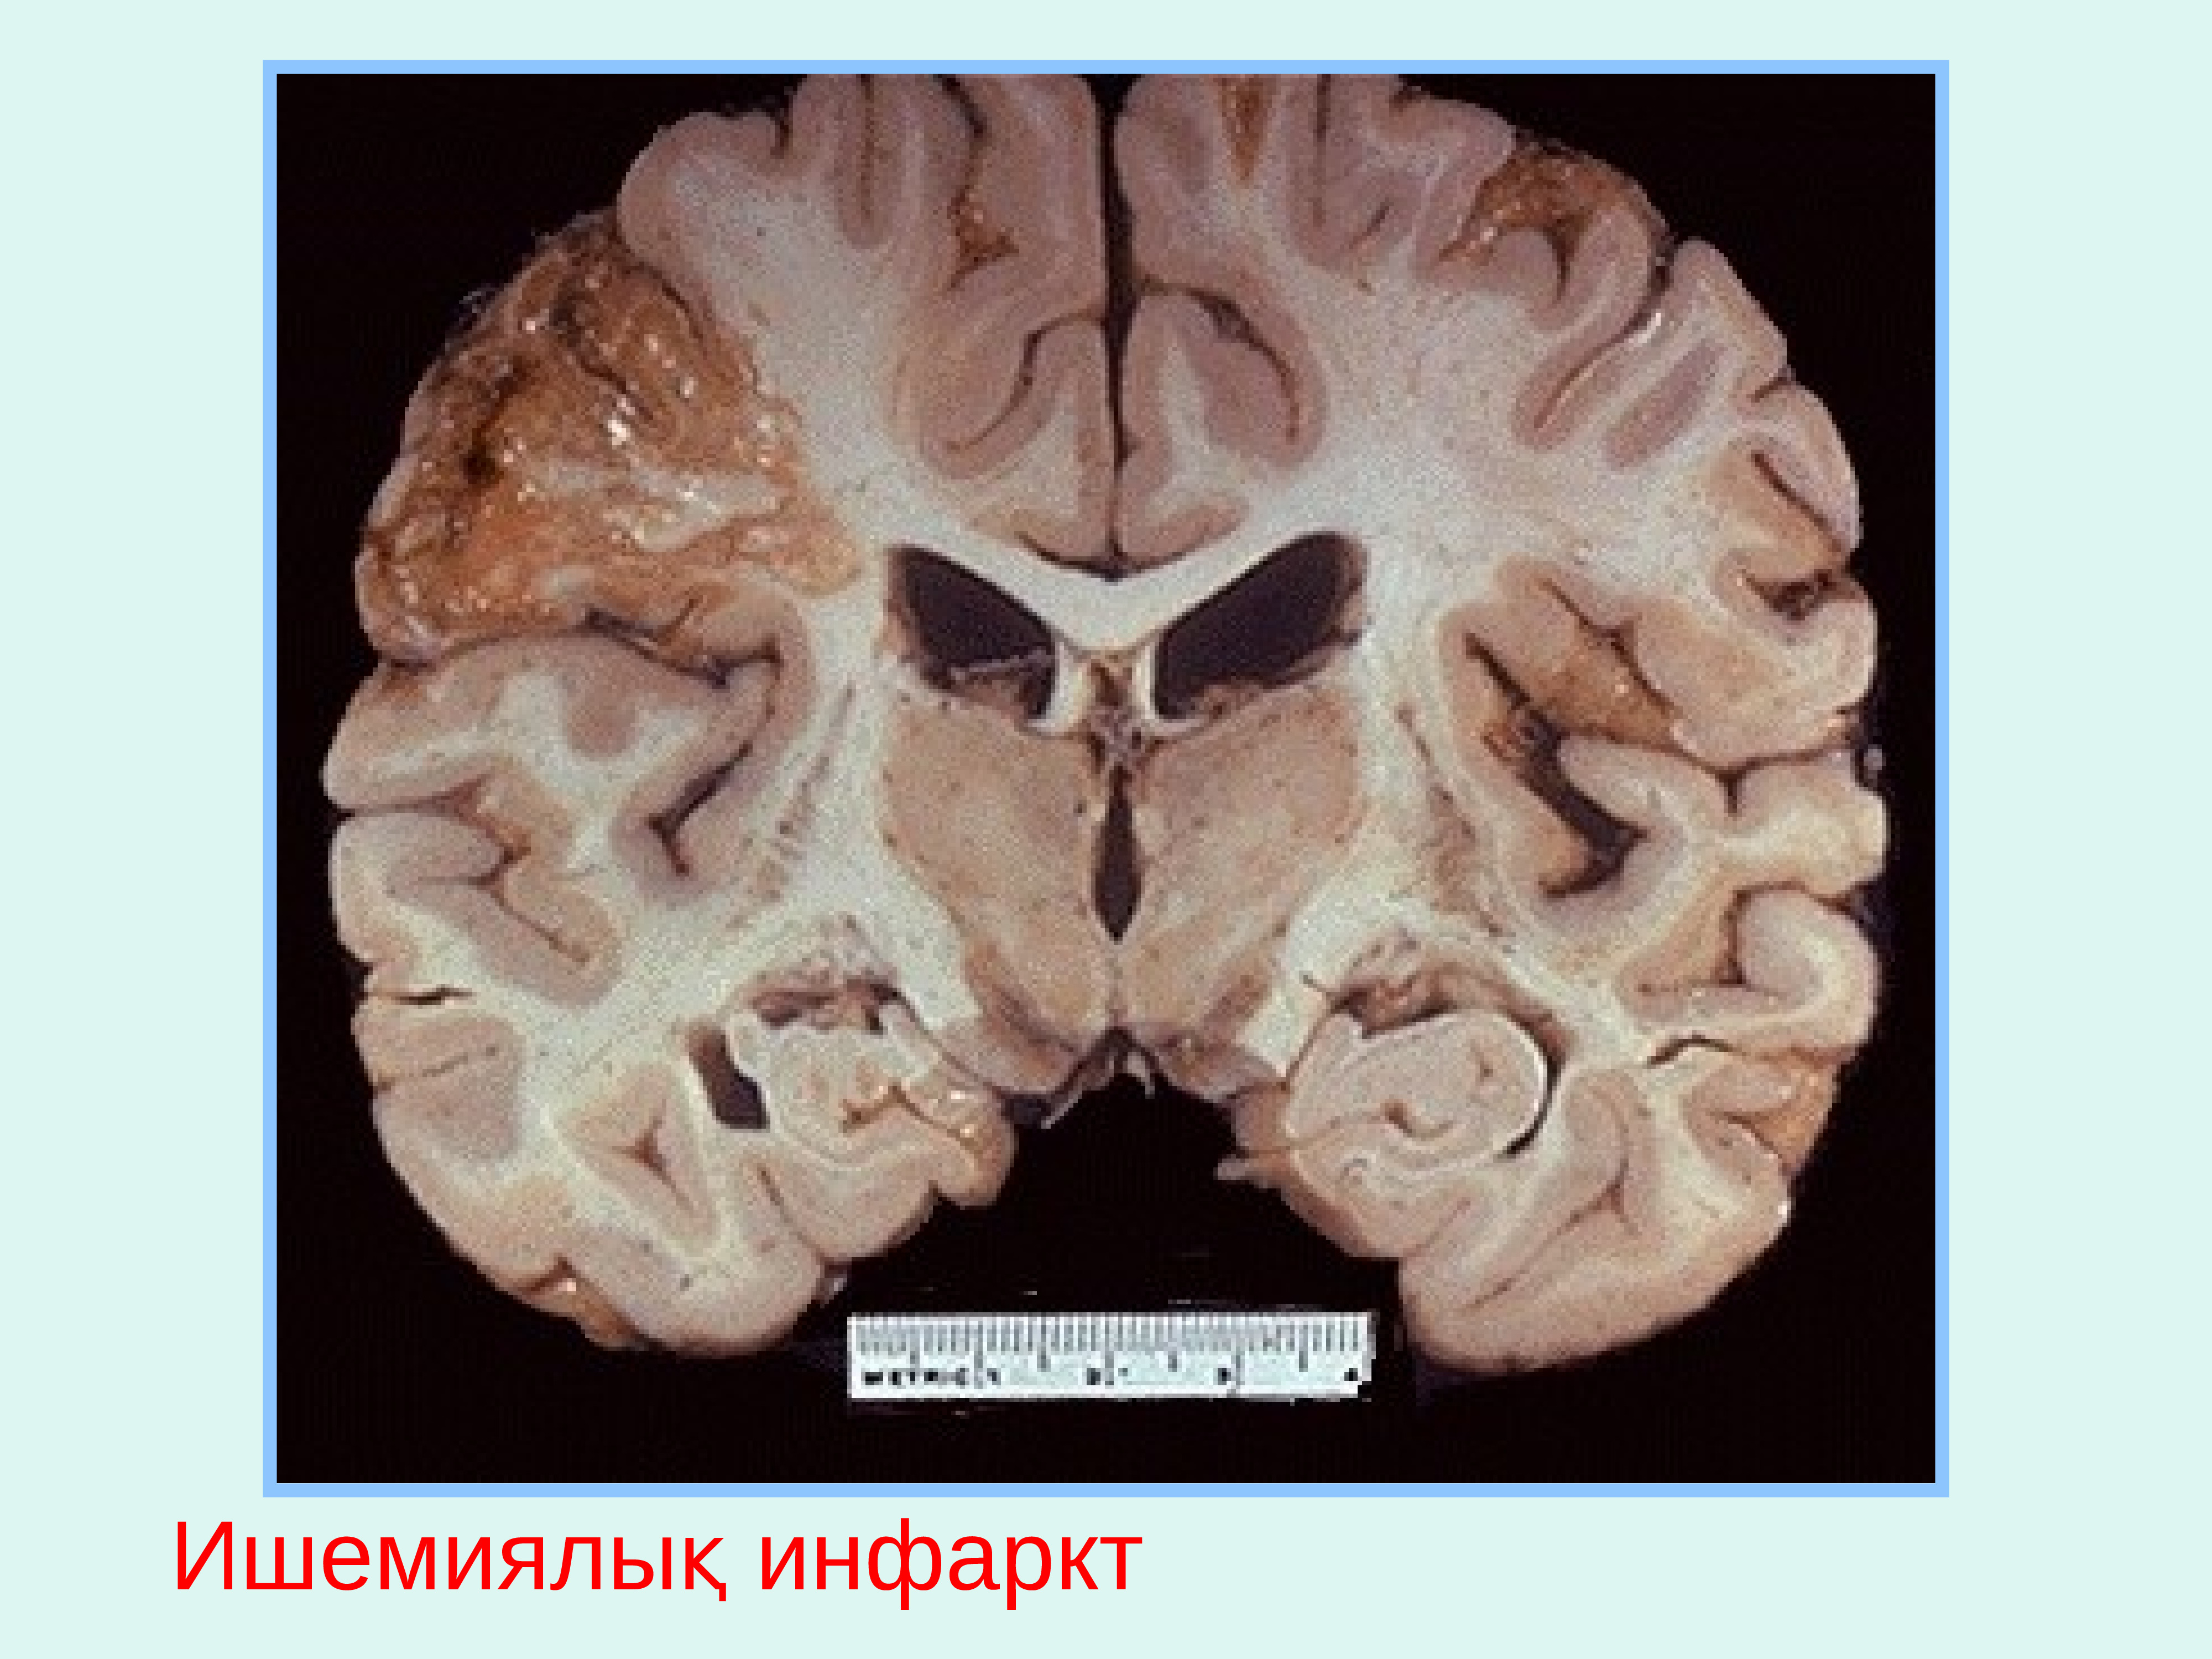 Диффузное поражение головного. Ишемический инфаркт головного мозга макропрепарат. Колликвационный некроз головного мозга. Болезнь Виллизиева круга. Киста головного мозга макропрепарат.